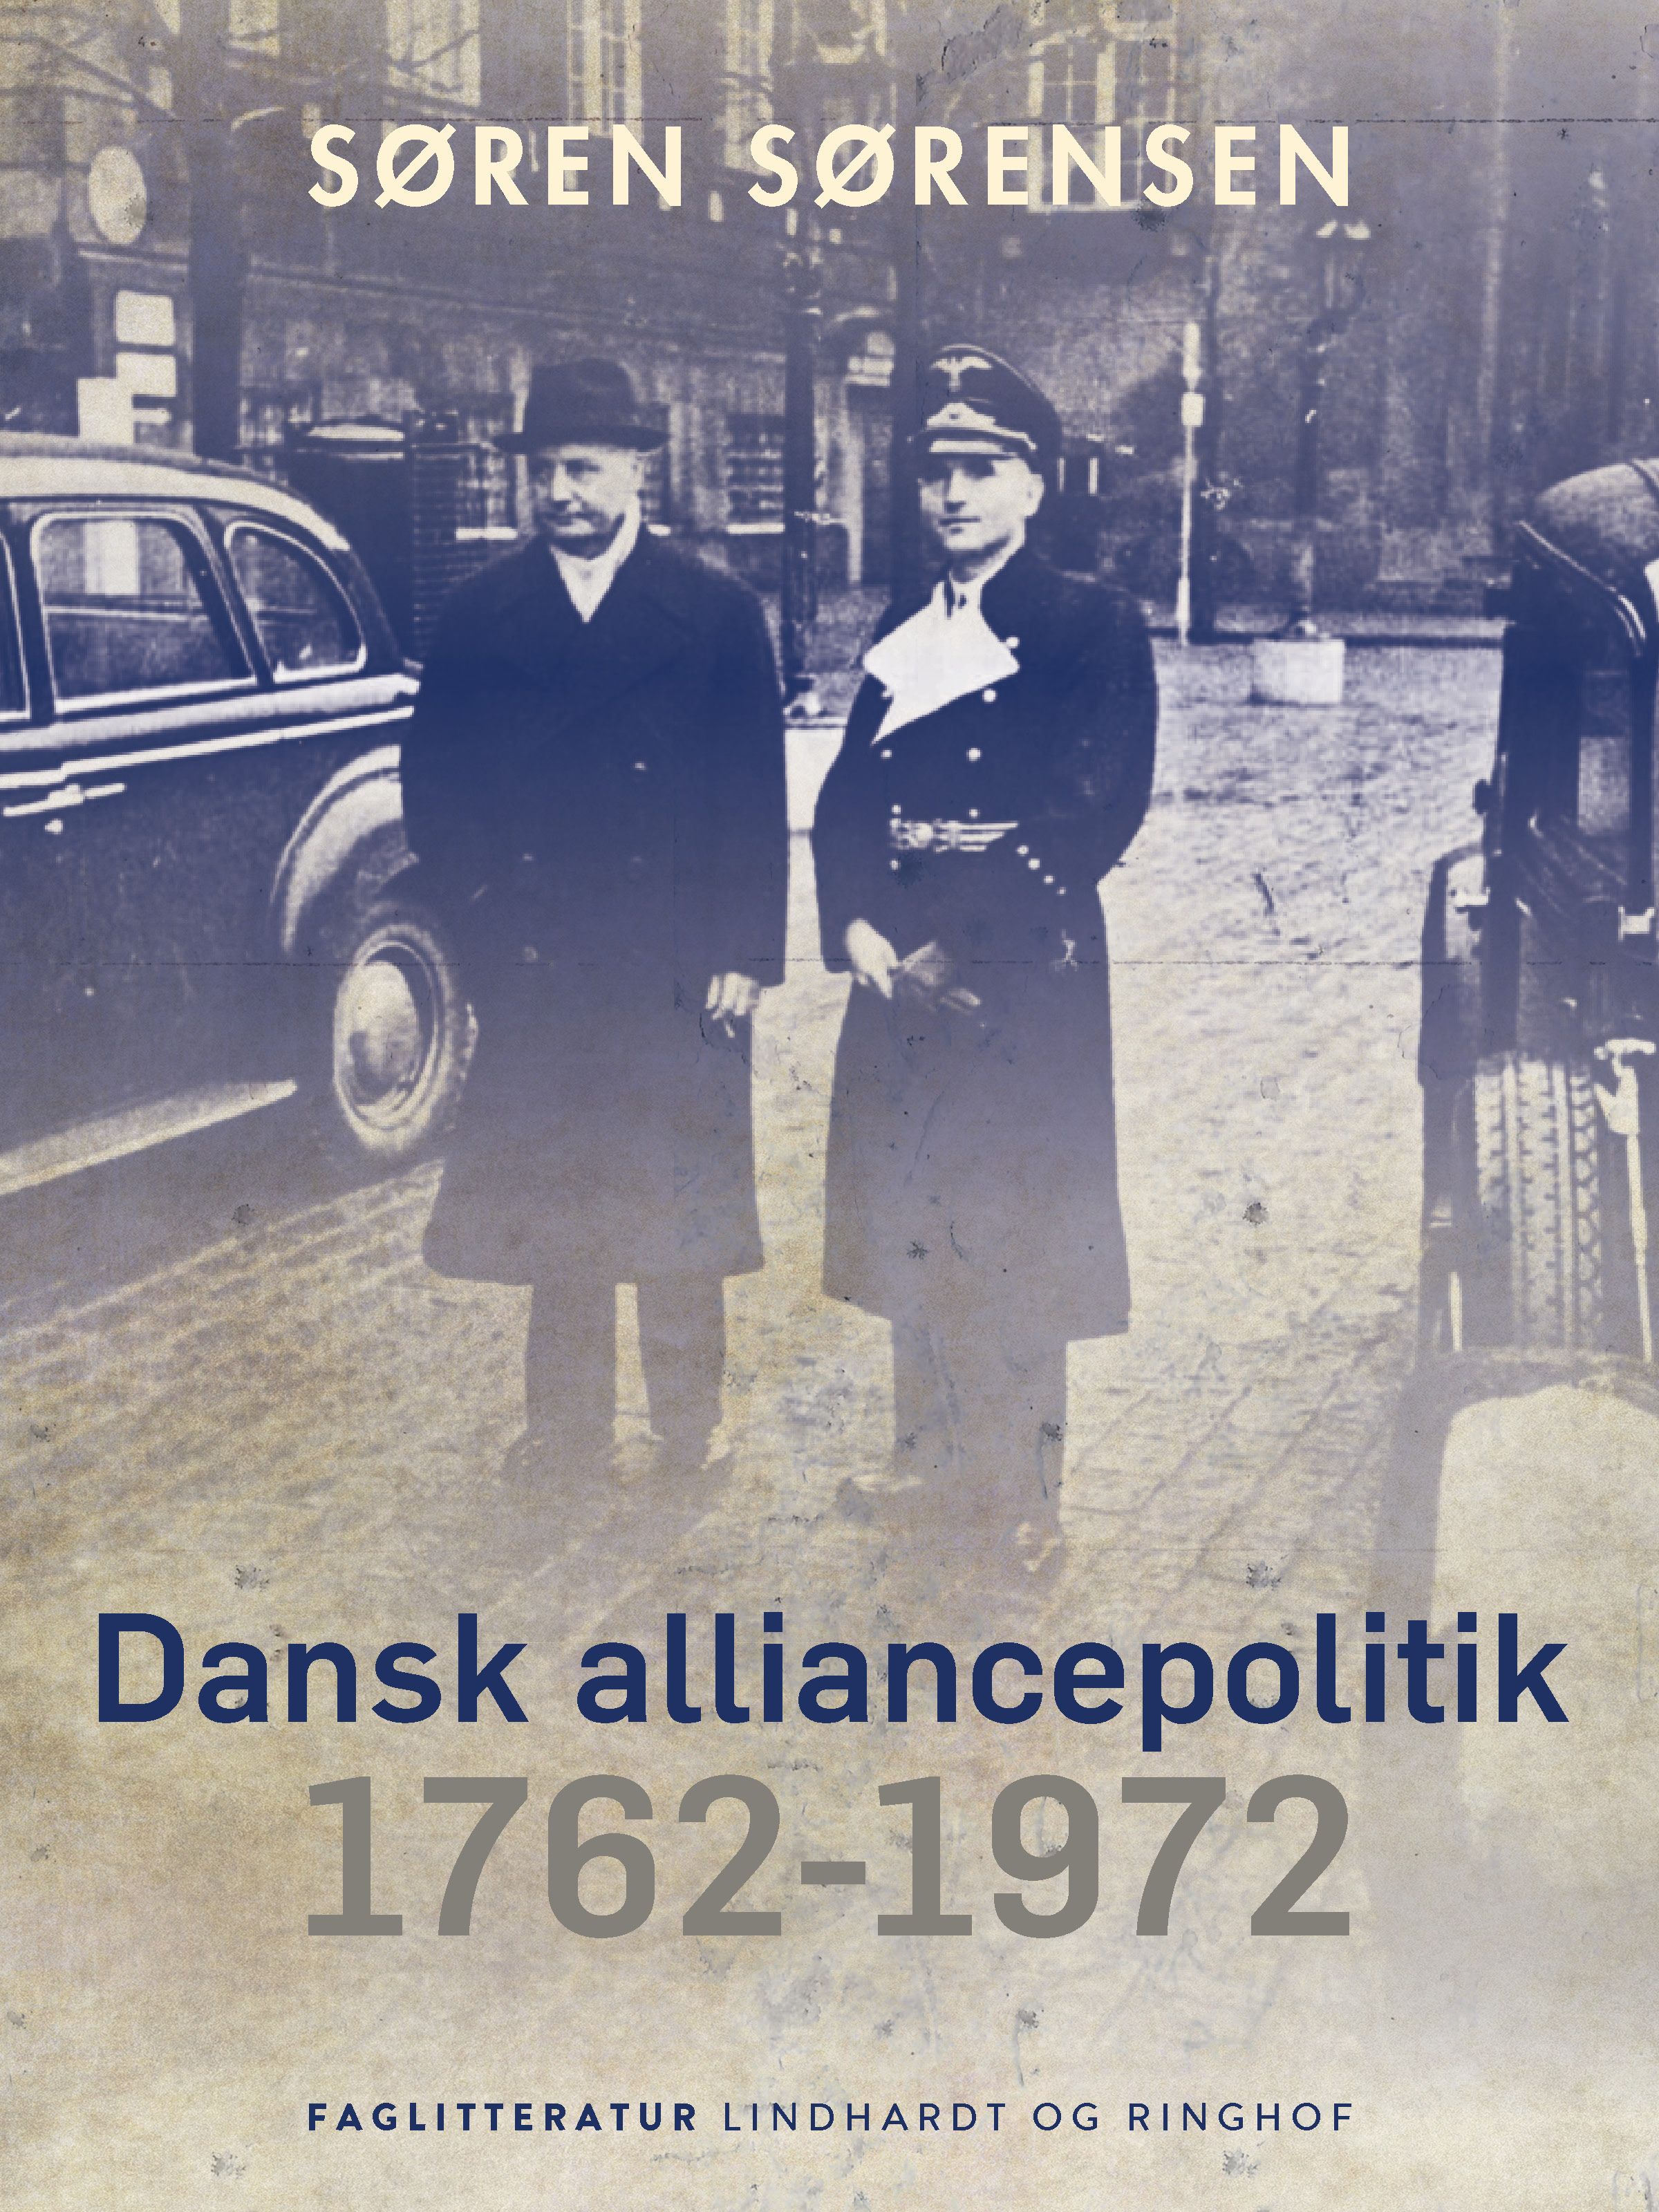 Dansk alliancepolitik 1762-1972, e-bok av Søren Sørensen